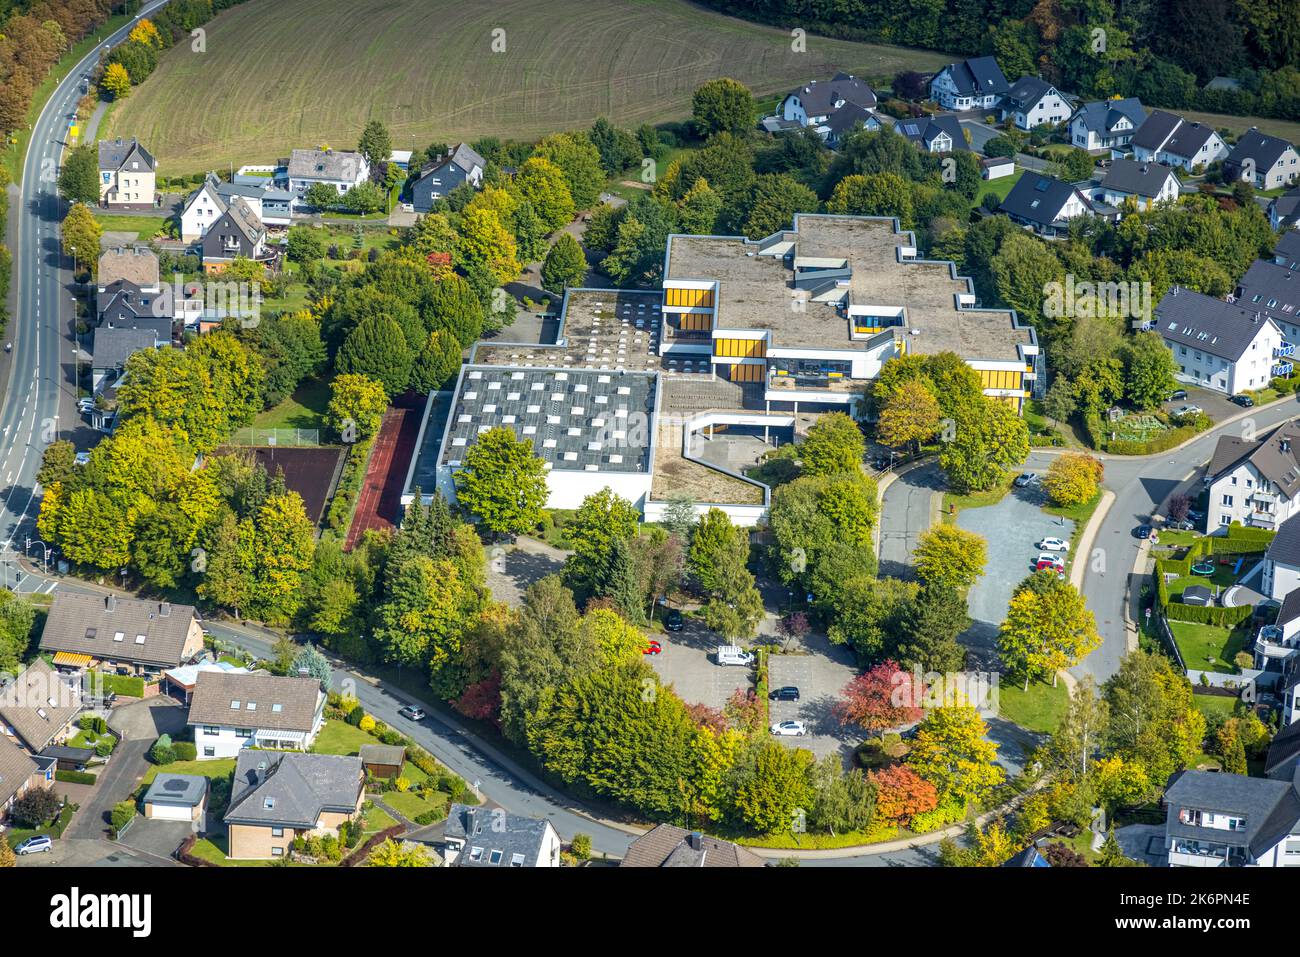 Vista aérea, centro escolar Franz Hoffmeister, academia educativa para las profesiones de la terapia, Ostwig, Bestwig, área de Ruhr, Renania del Norte-Westfalia, Alemania Foto de stock